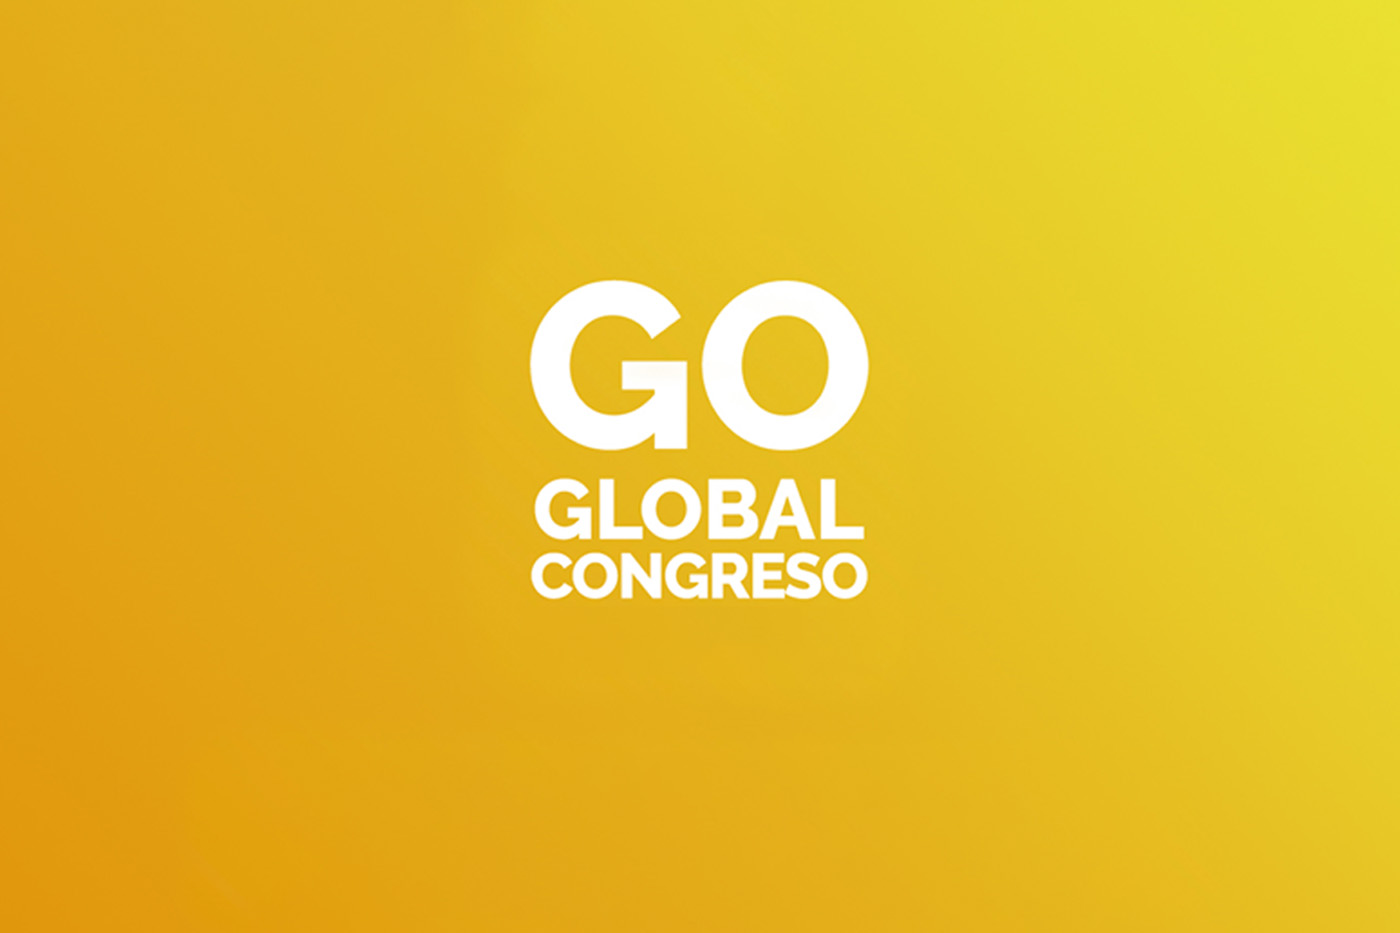 go global congress logo